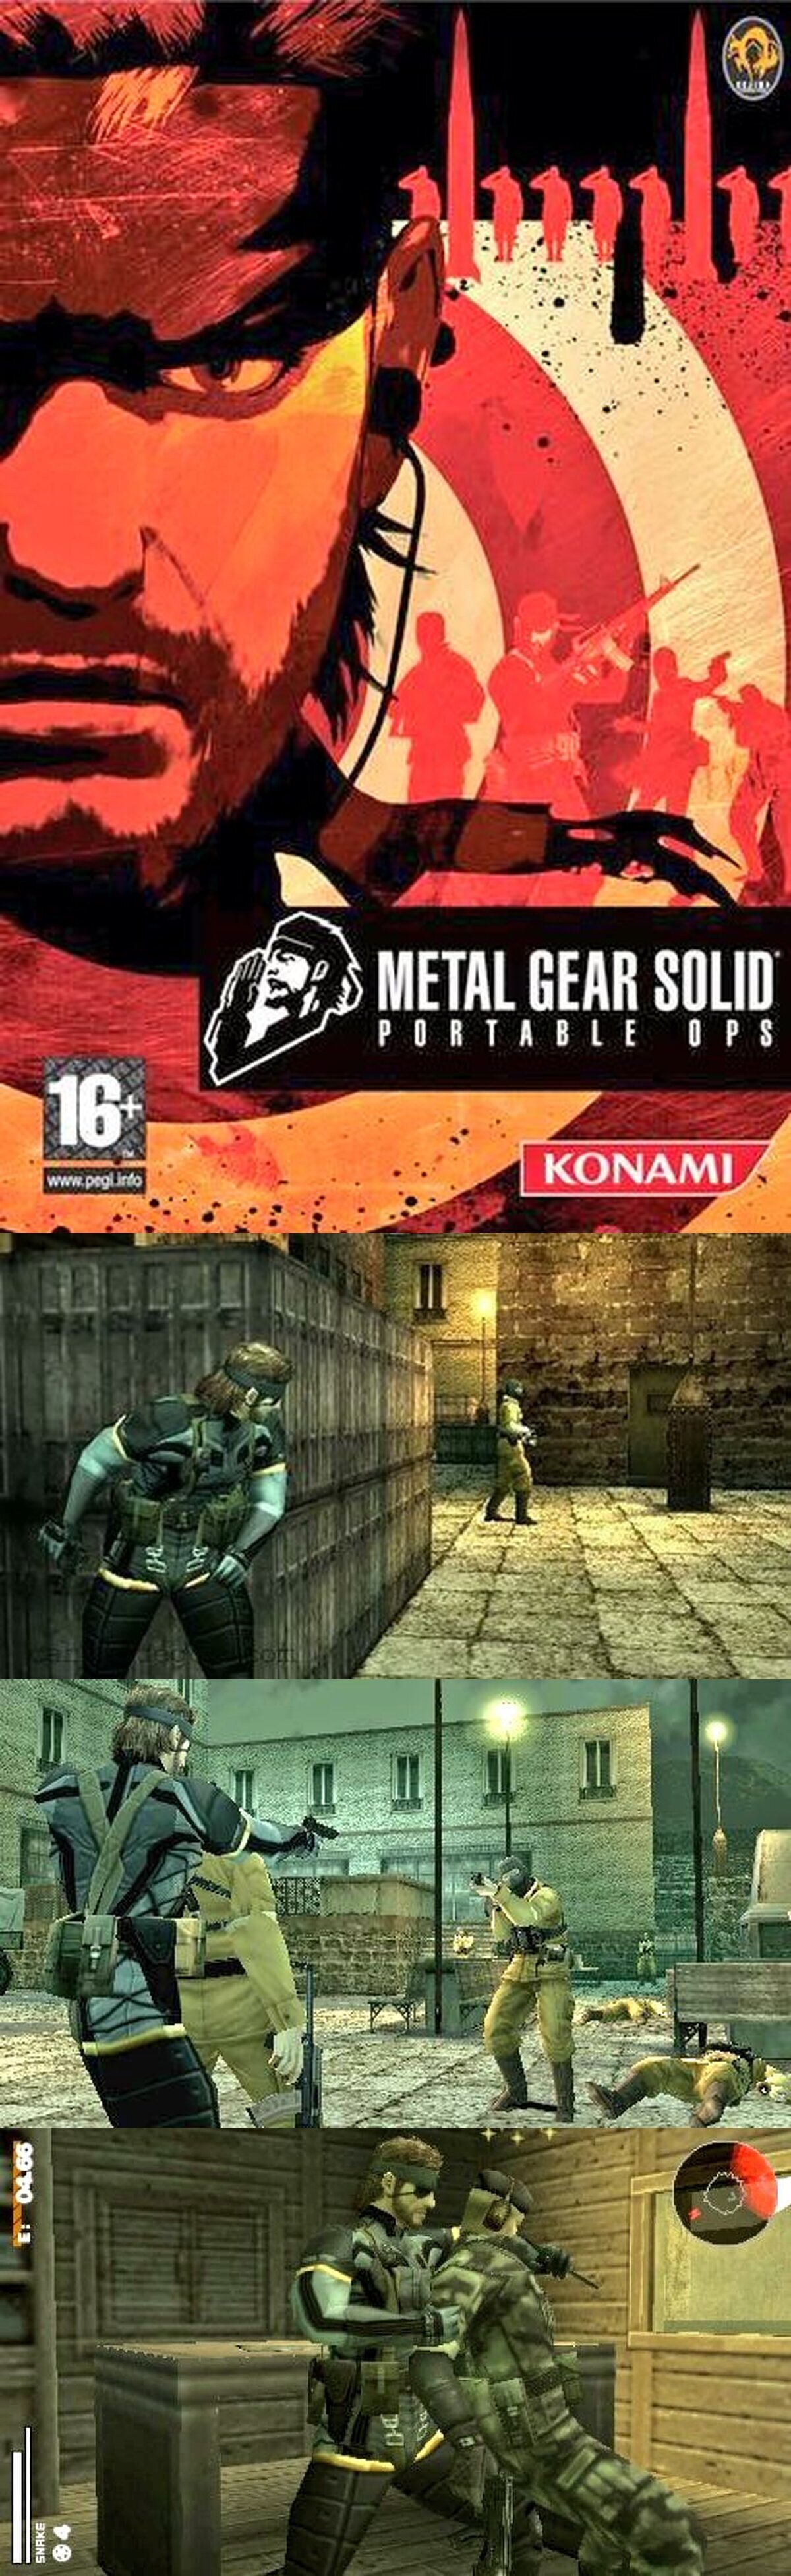 Hace 17 años se lanzaba Metal Gear Solid: Portable Ops en Europa para la consola PSP